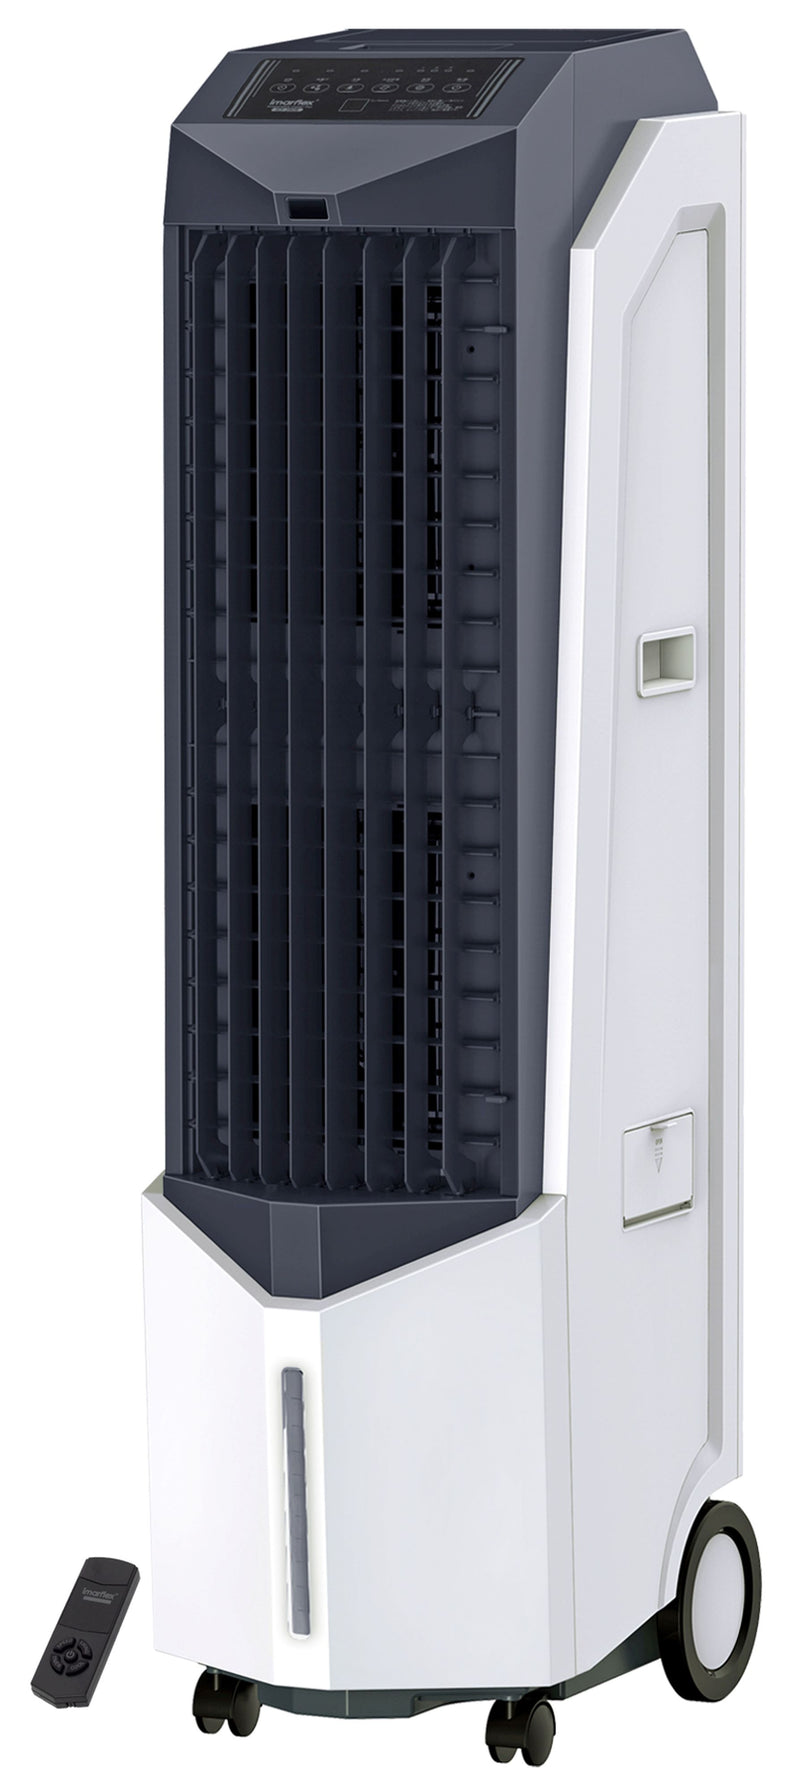 IMARFLEX 伊瑪牌 ICF-280R 電子式可移遙控水冷風機